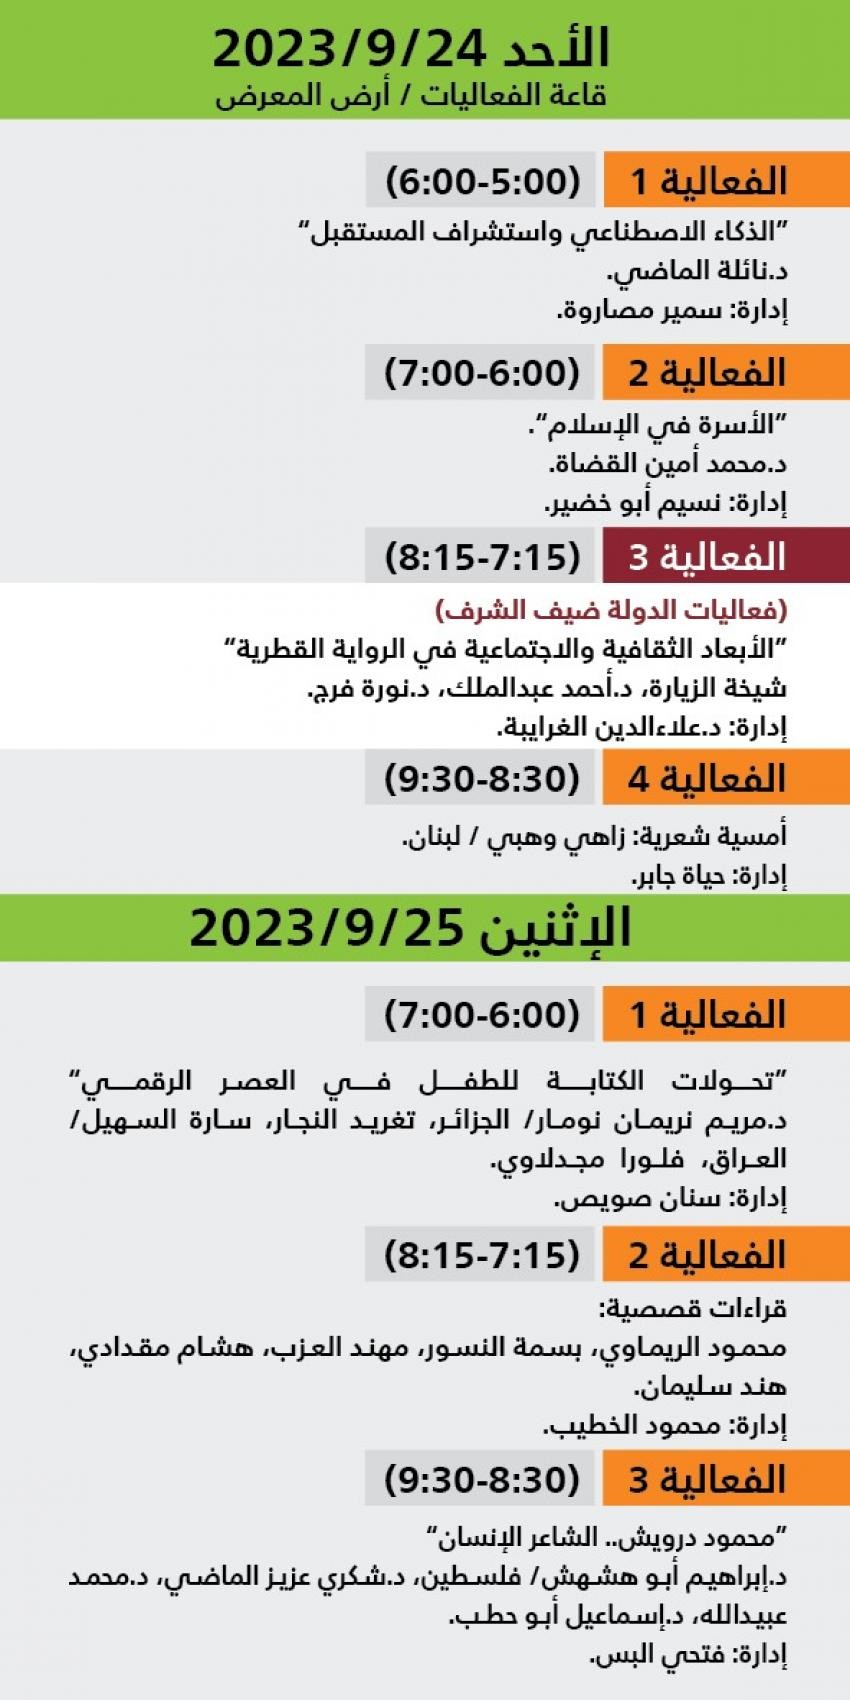 اليوم الرابع والخامس معرض عمان للكتاب 2023.jfif